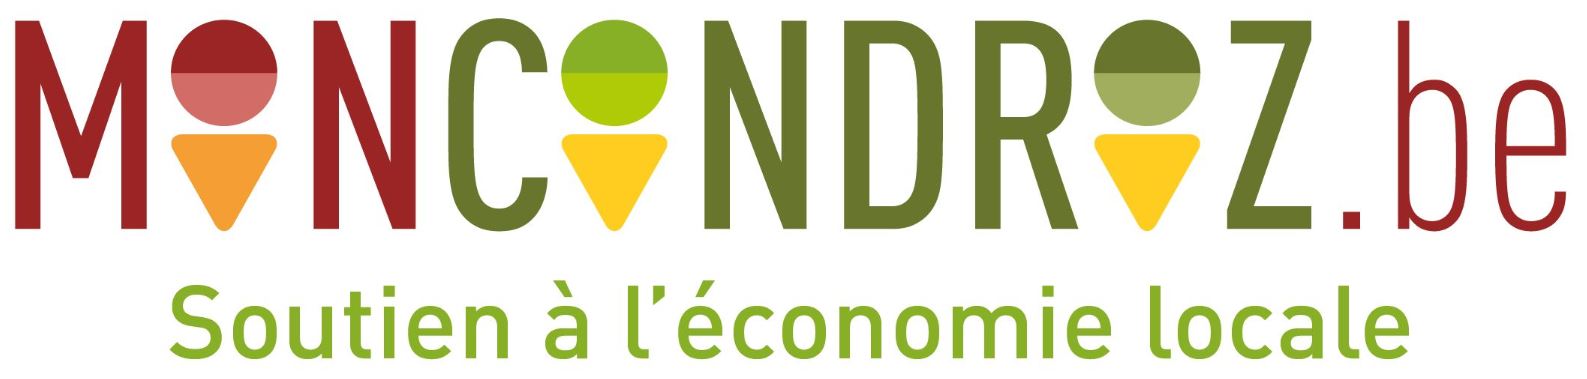 MonCondroz.be : Faites vivre l’économie locale !